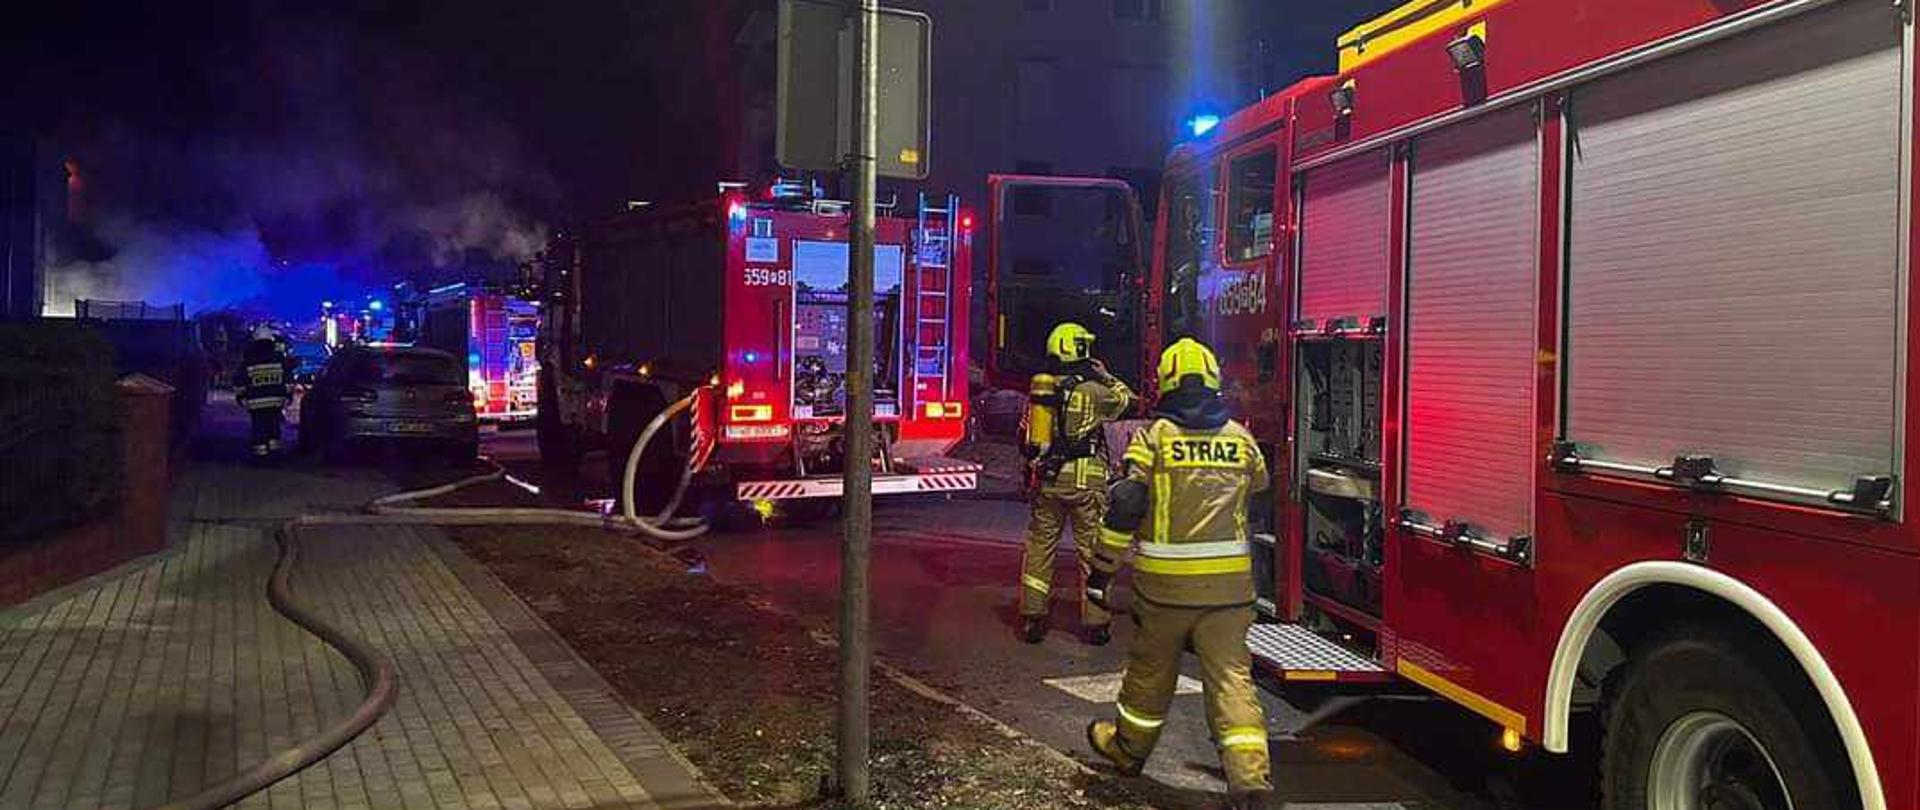 Zdjęcie przedstawia dwa samochody pożarnicze stojące na ulicy. Przy jednym samochodzie stoi dwóch strażaków, na chodniku rozciągnięte są węże pożarnicze.